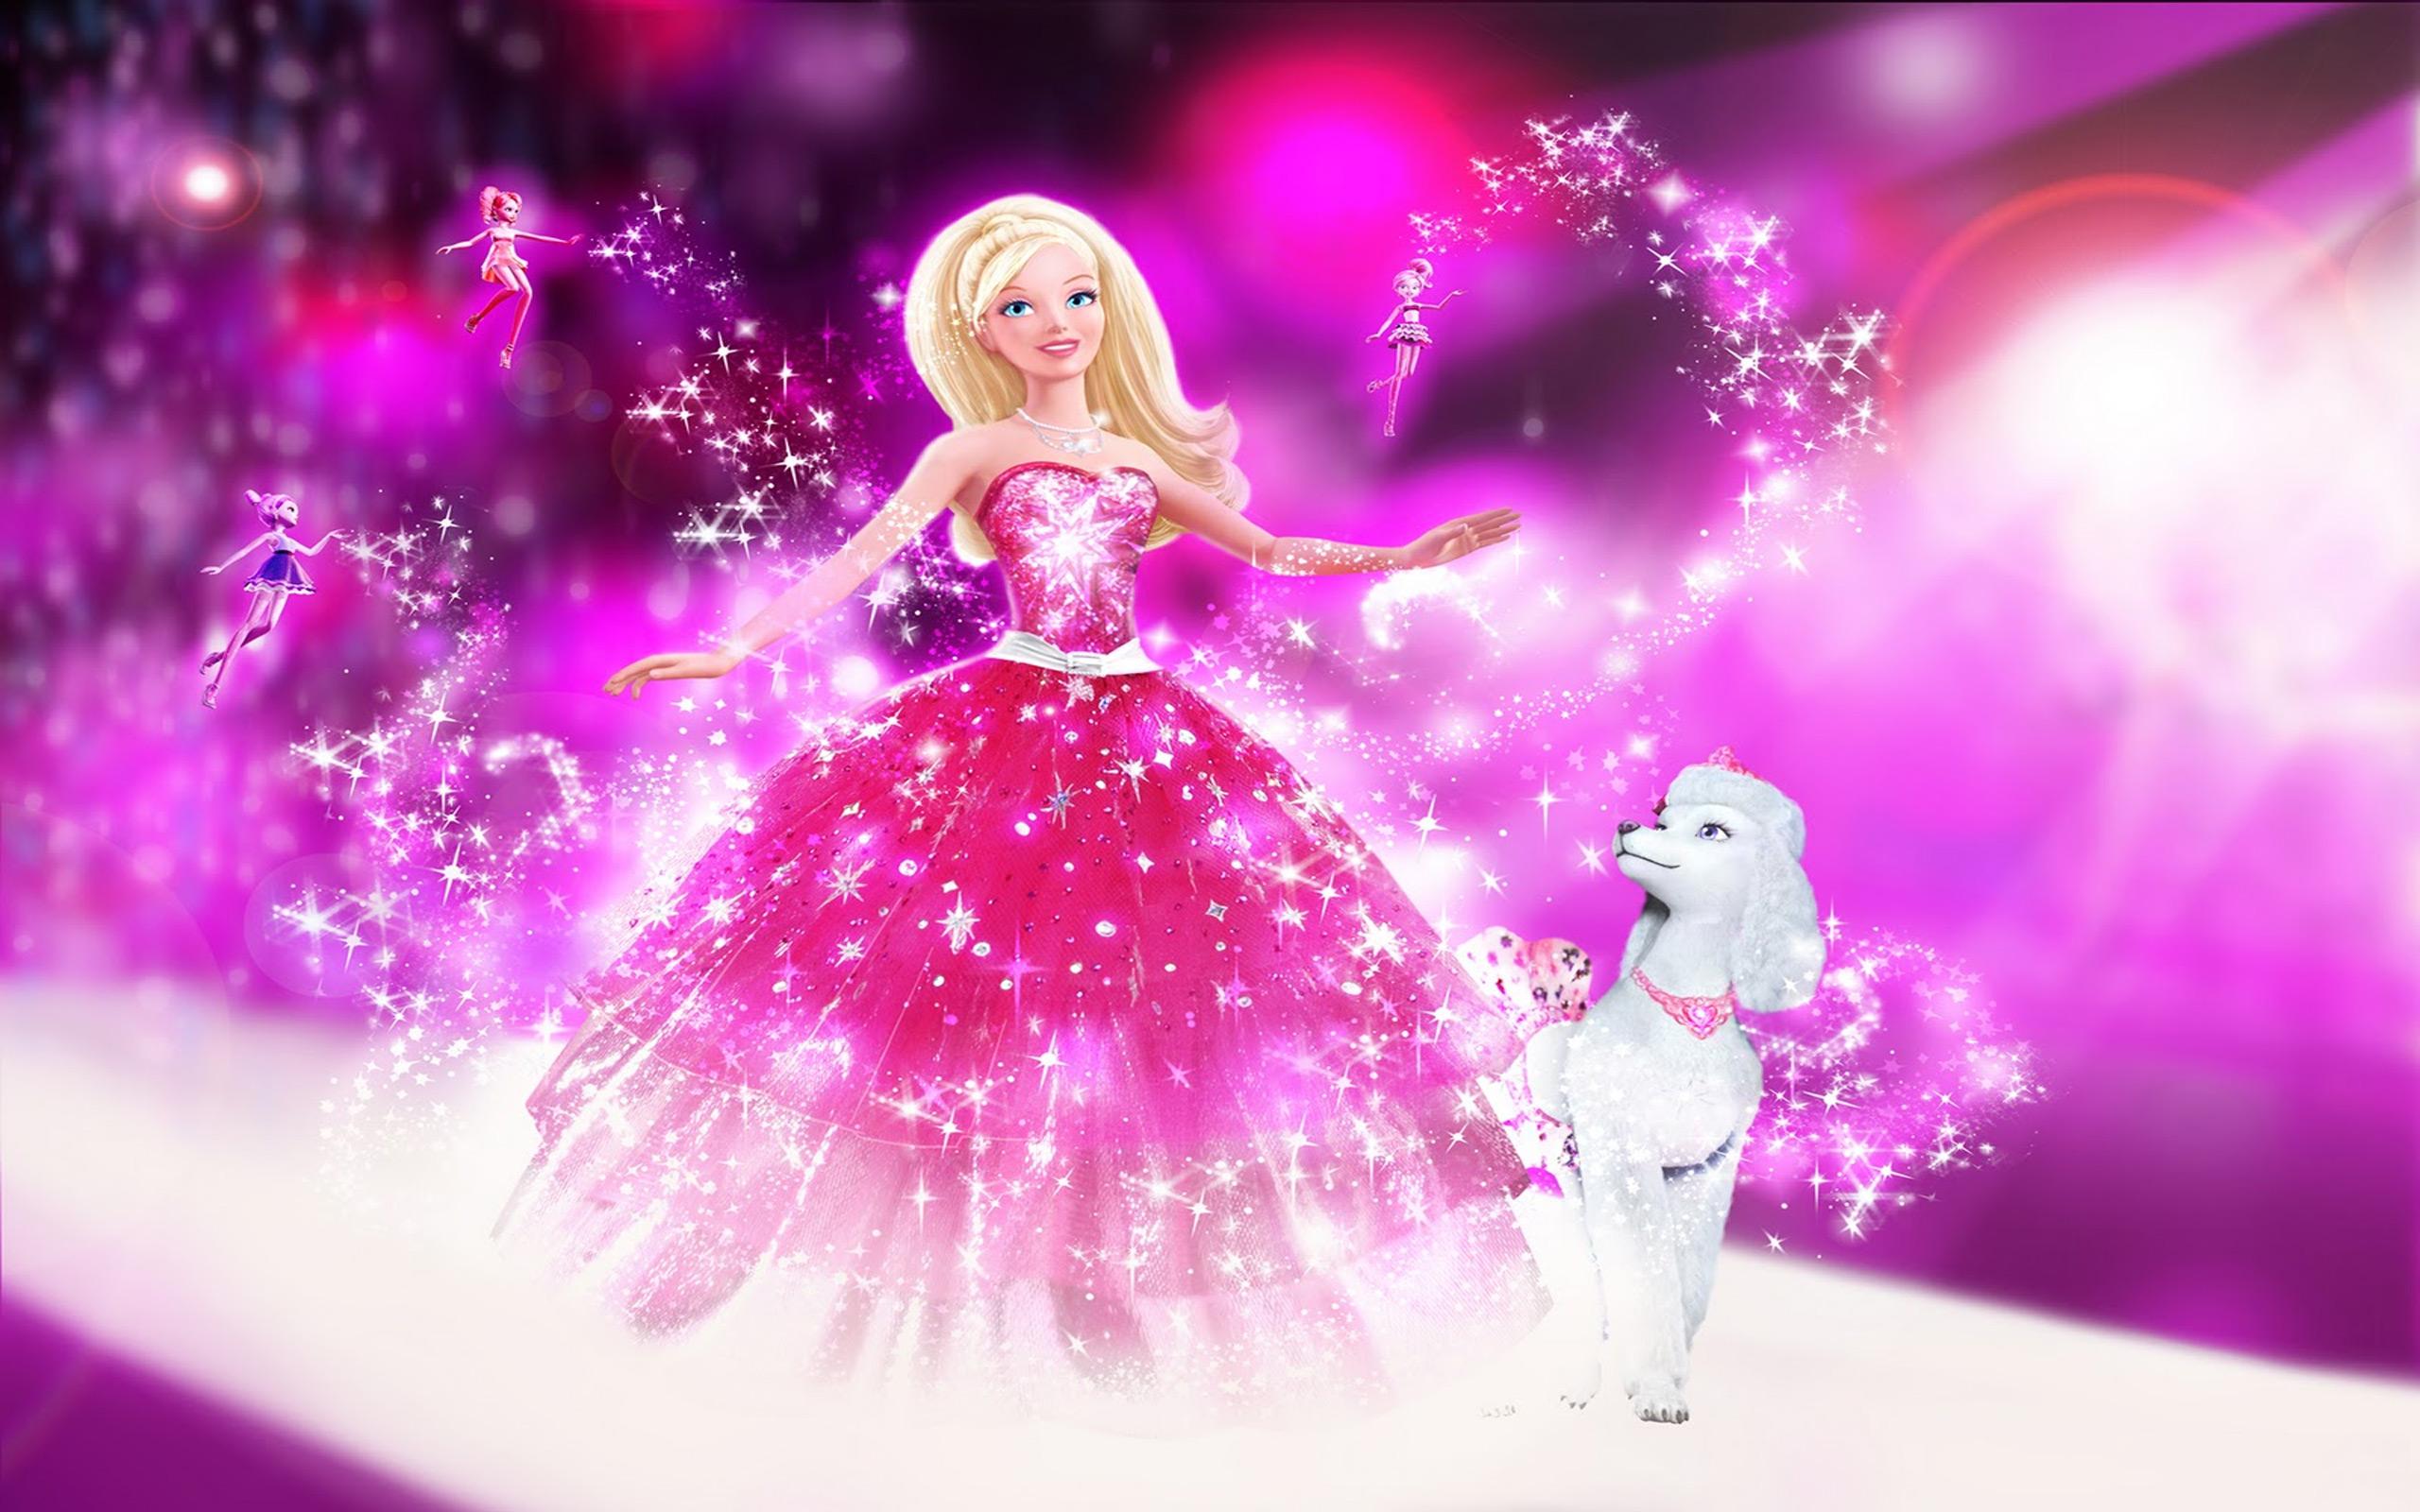 Картинка на заставку телефона для девочки. Барби Сказочная Страна моды феи. Куклы Барби Сказочная Страна моды. Барби: Сказочная Страна моды (2010).